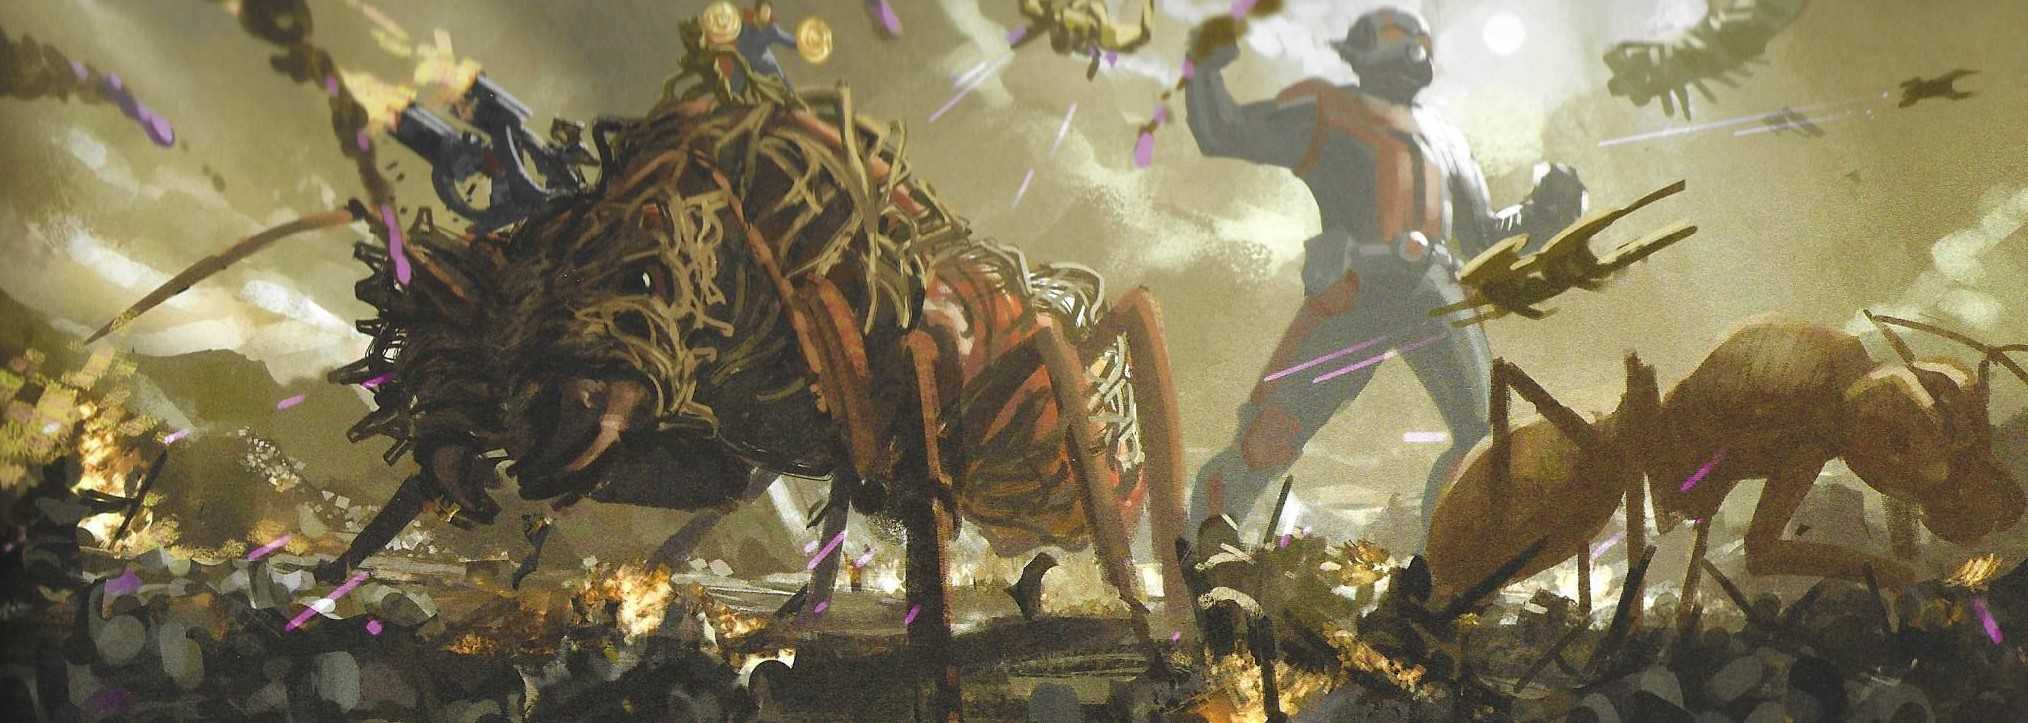 Битва людей в муравьями